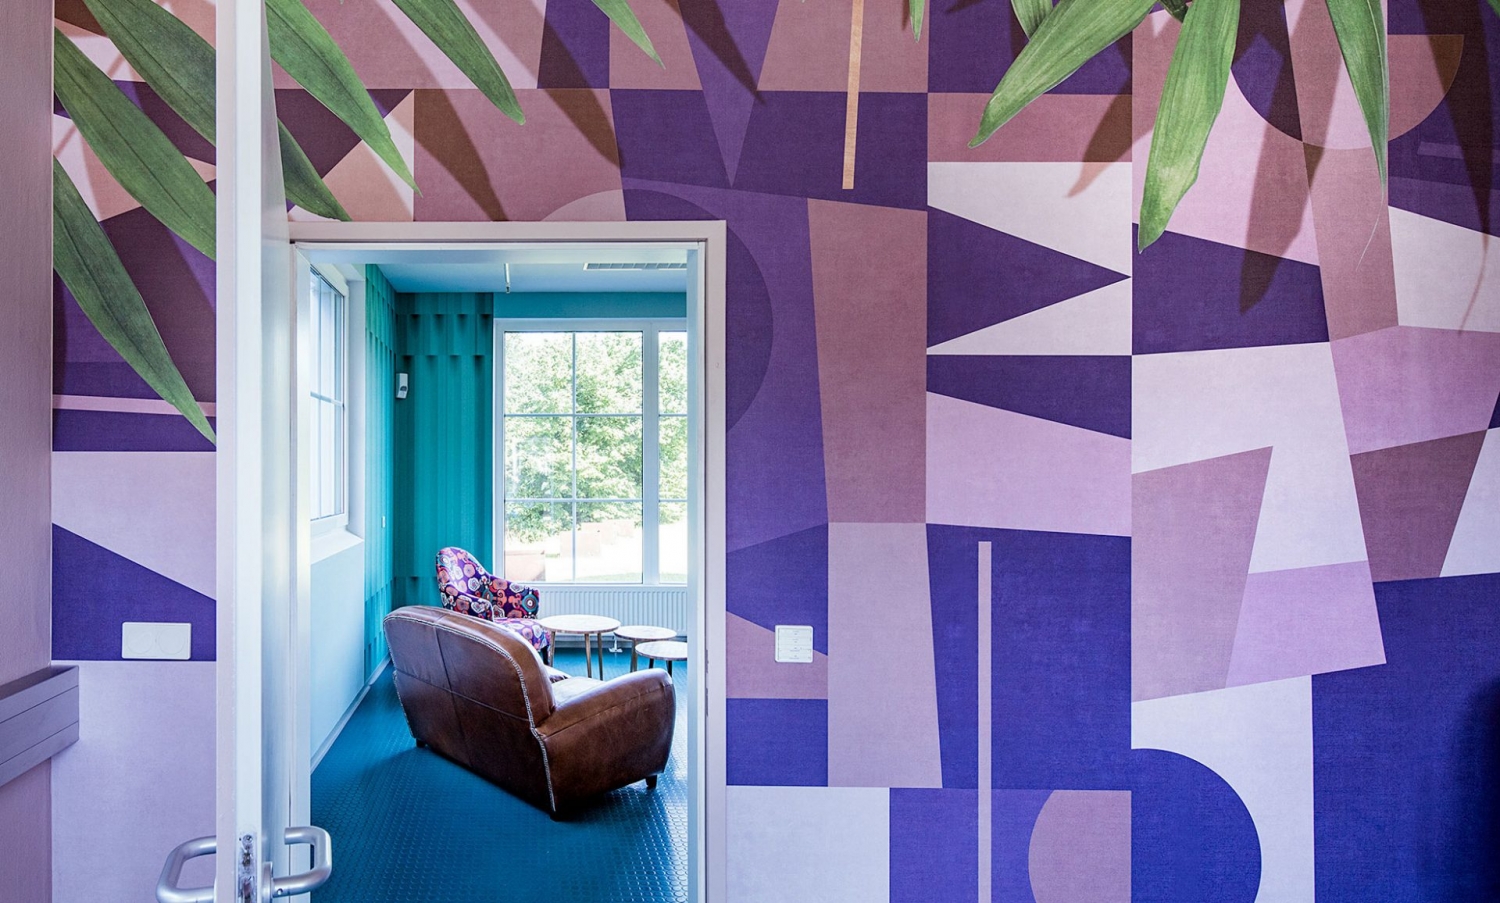 Grafisch gemusterte Tapete von Glamora in Violett-Tönen mit Palmenblätter in 3D-Effekt, passend zu türkisem Boden und Ledersofa